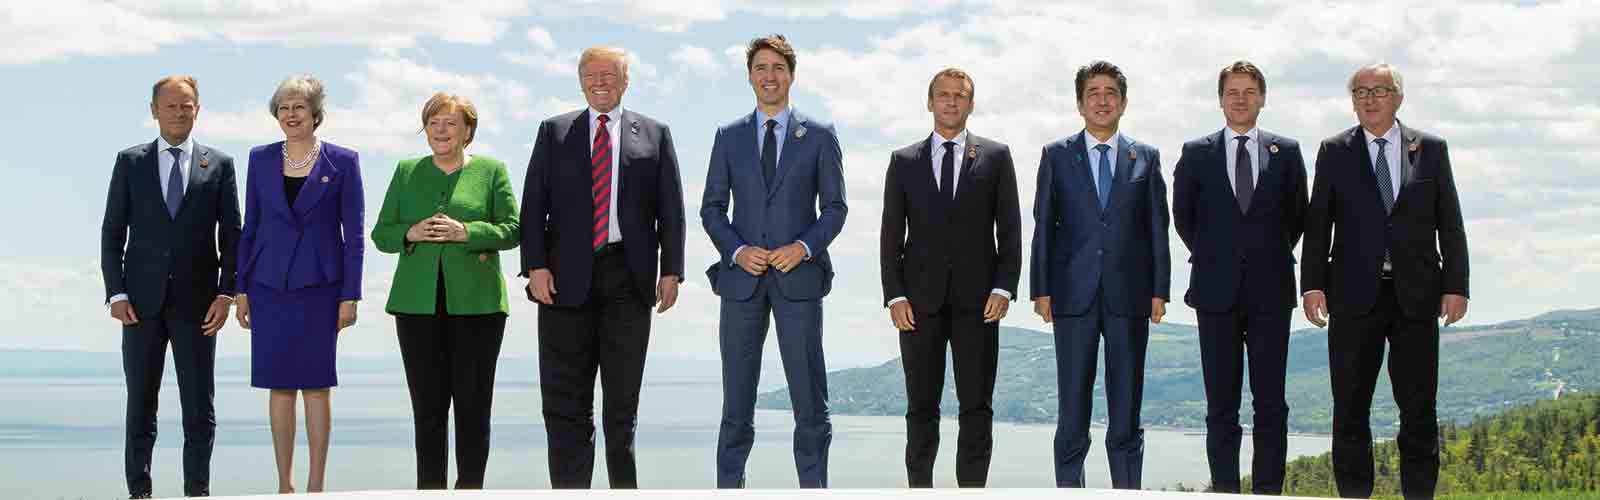 Les USA s’opposent violemment au lexique de l’avortement lors des négociations du G7